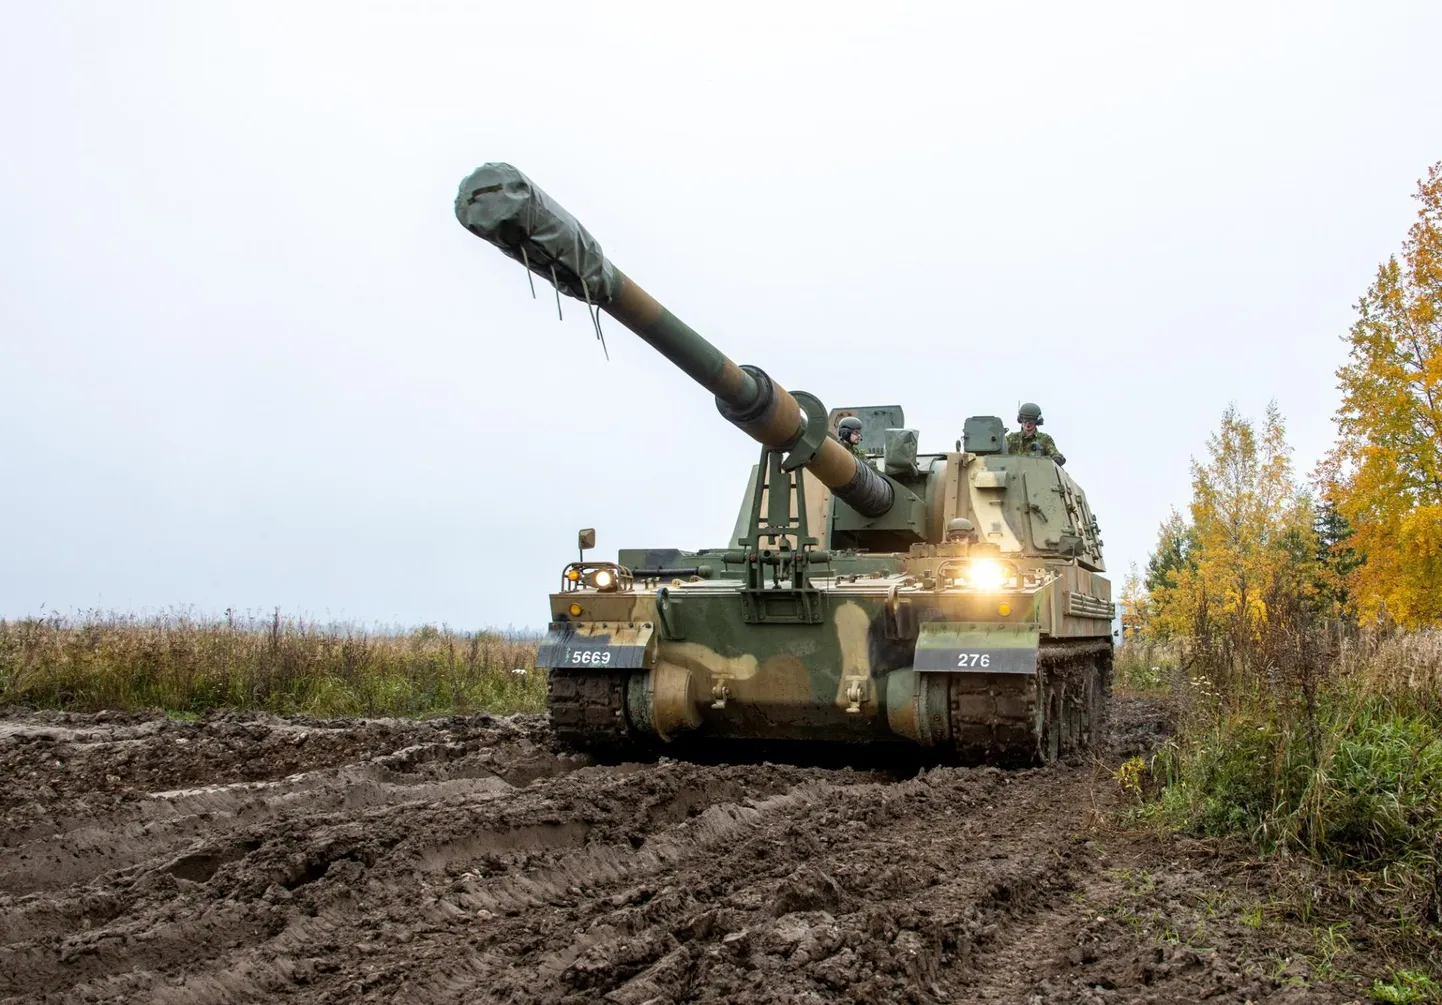 Kas edaspidi võiks Eesti ise endale suurtükilaskemoona toota, näitavad lähiaastad. Pildil Eesti kaitseväe au ja uhkus K9.